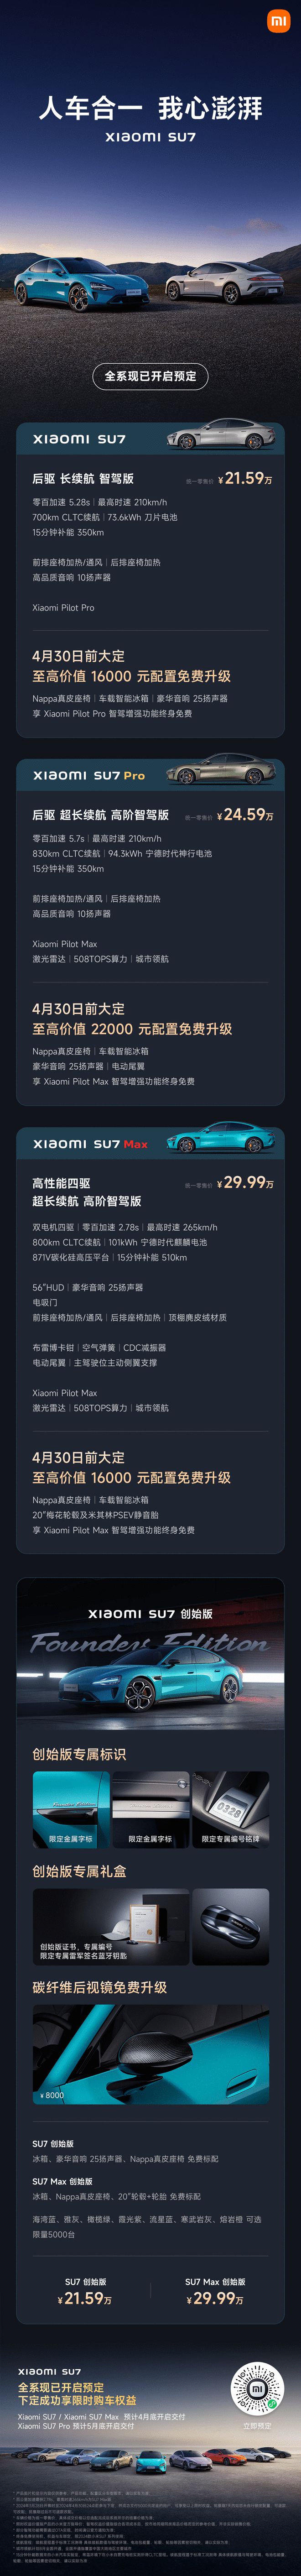 小米汽车SU7正式发布 标准版21.59万元